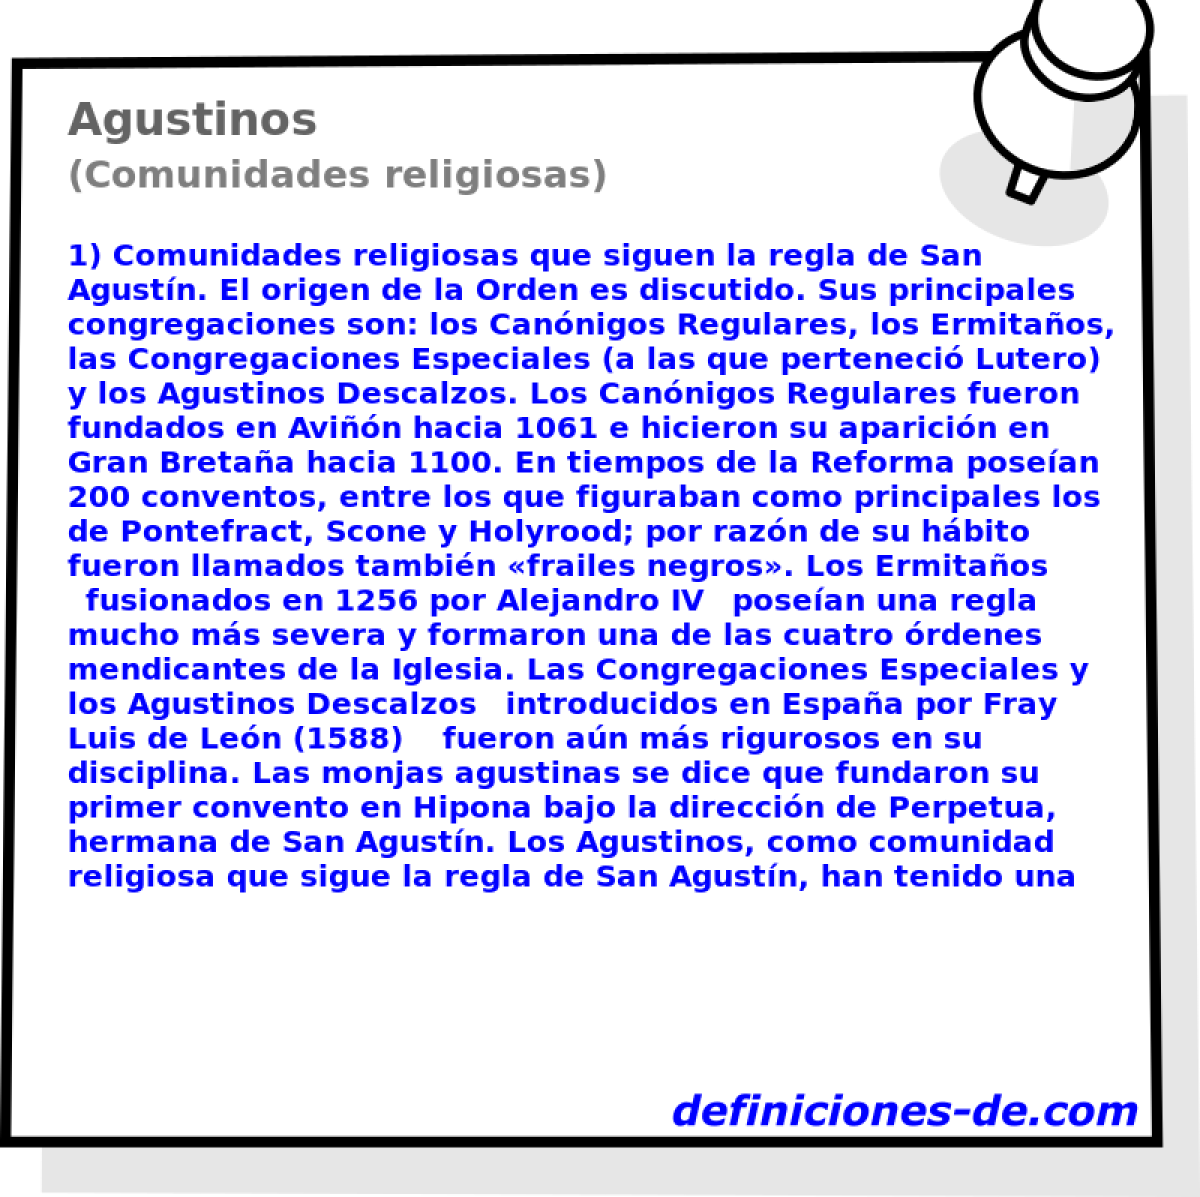 Agustinos (Comunidades religiosas)